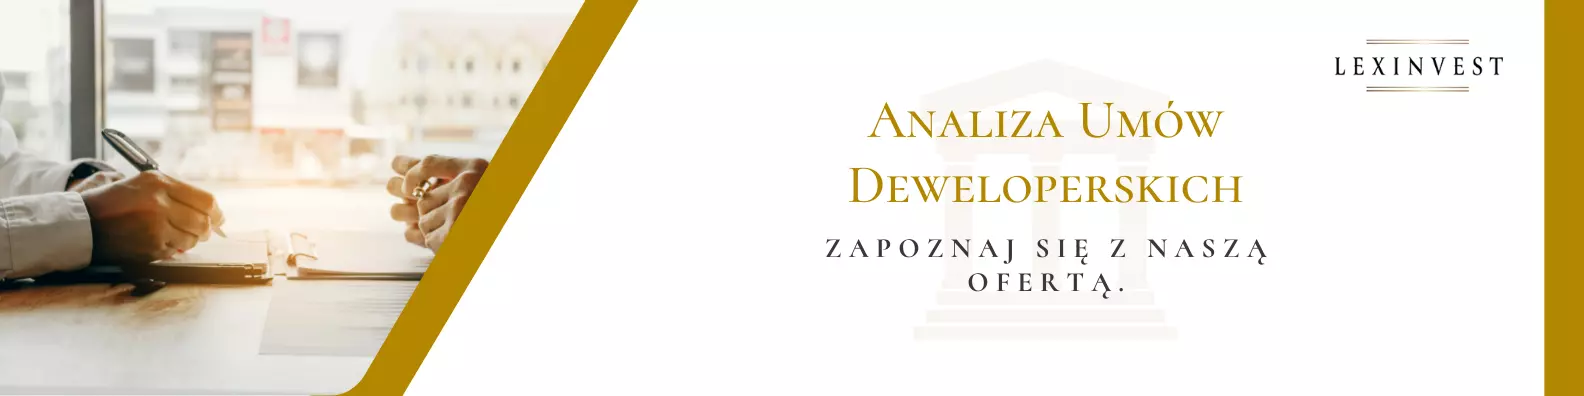 Analiza umowy deweloperskiej Warszawa - Lexinvest